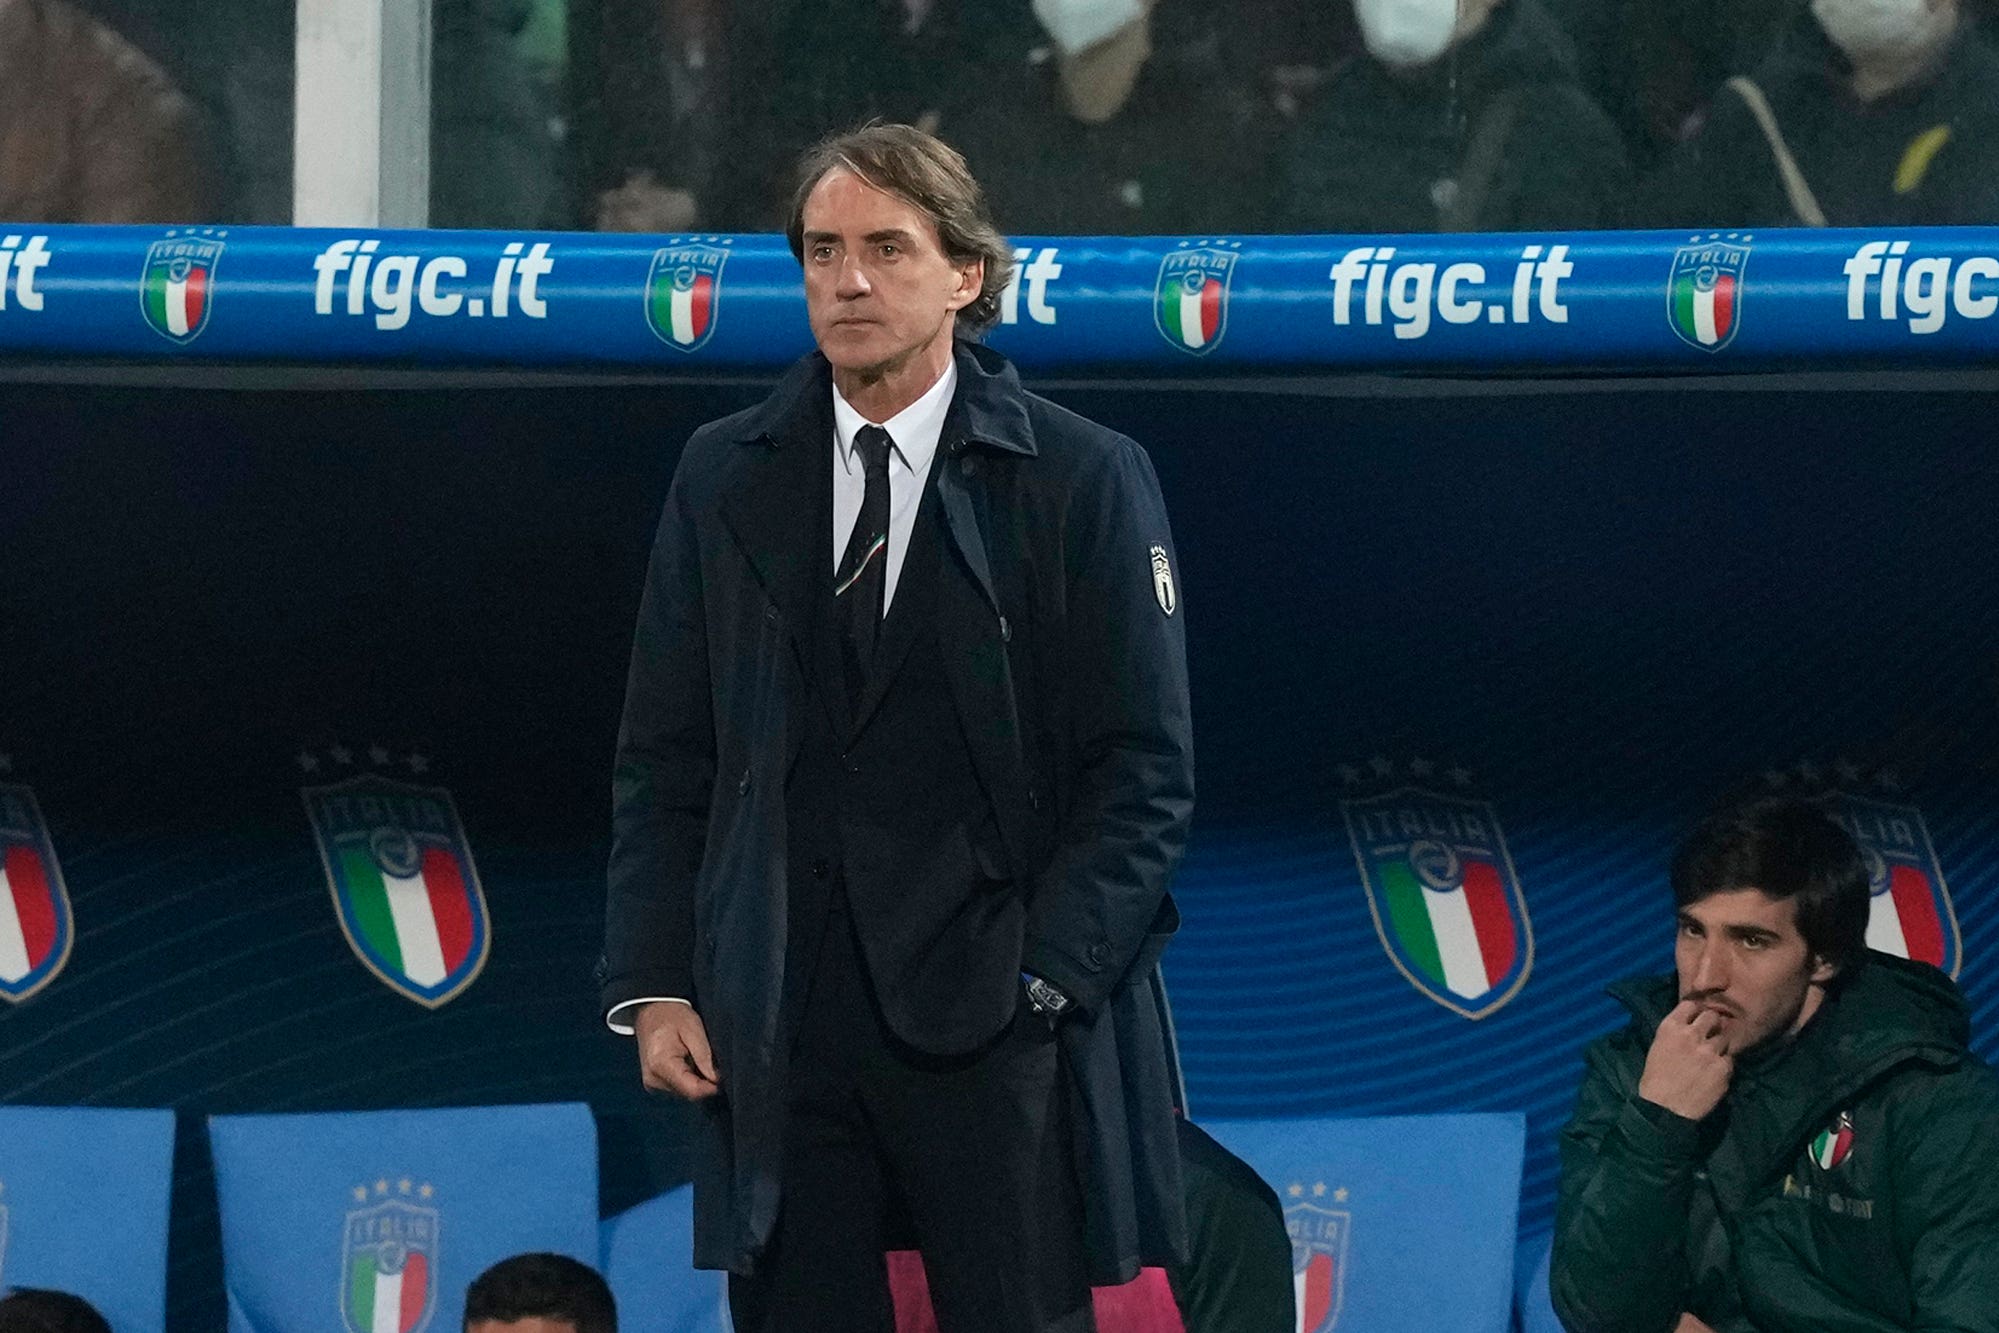 Roberto Mancini “estremamente deluso” per discutere del futuro dell’Italia dopo lo shock degli spareggi